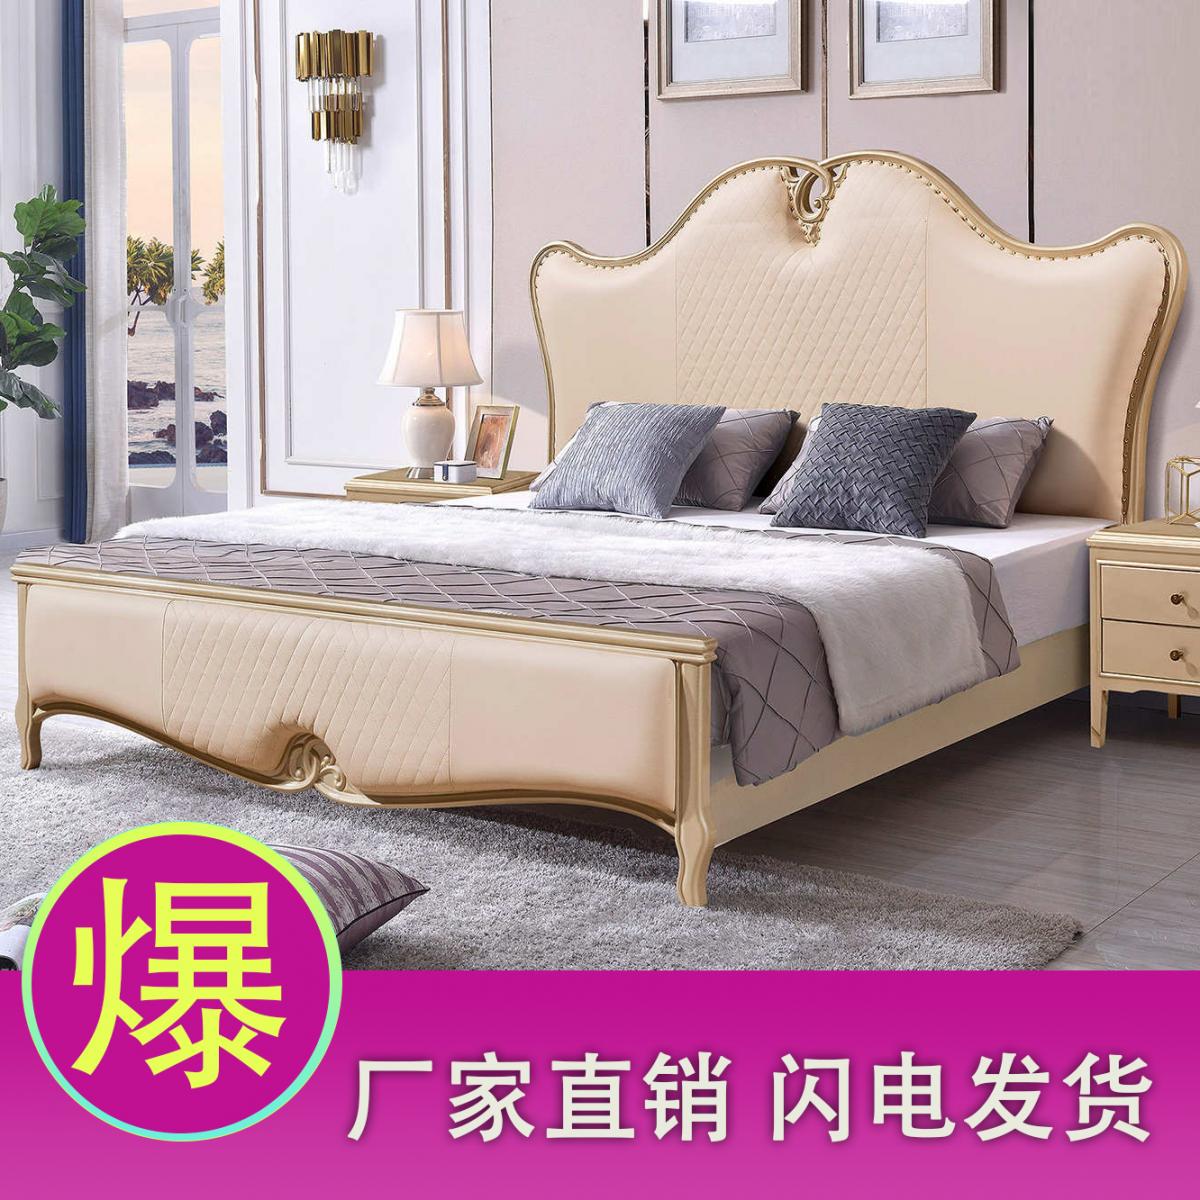 欧式床双人床卧室家具美式皮床法式公主婚床现代北欧轻奢床